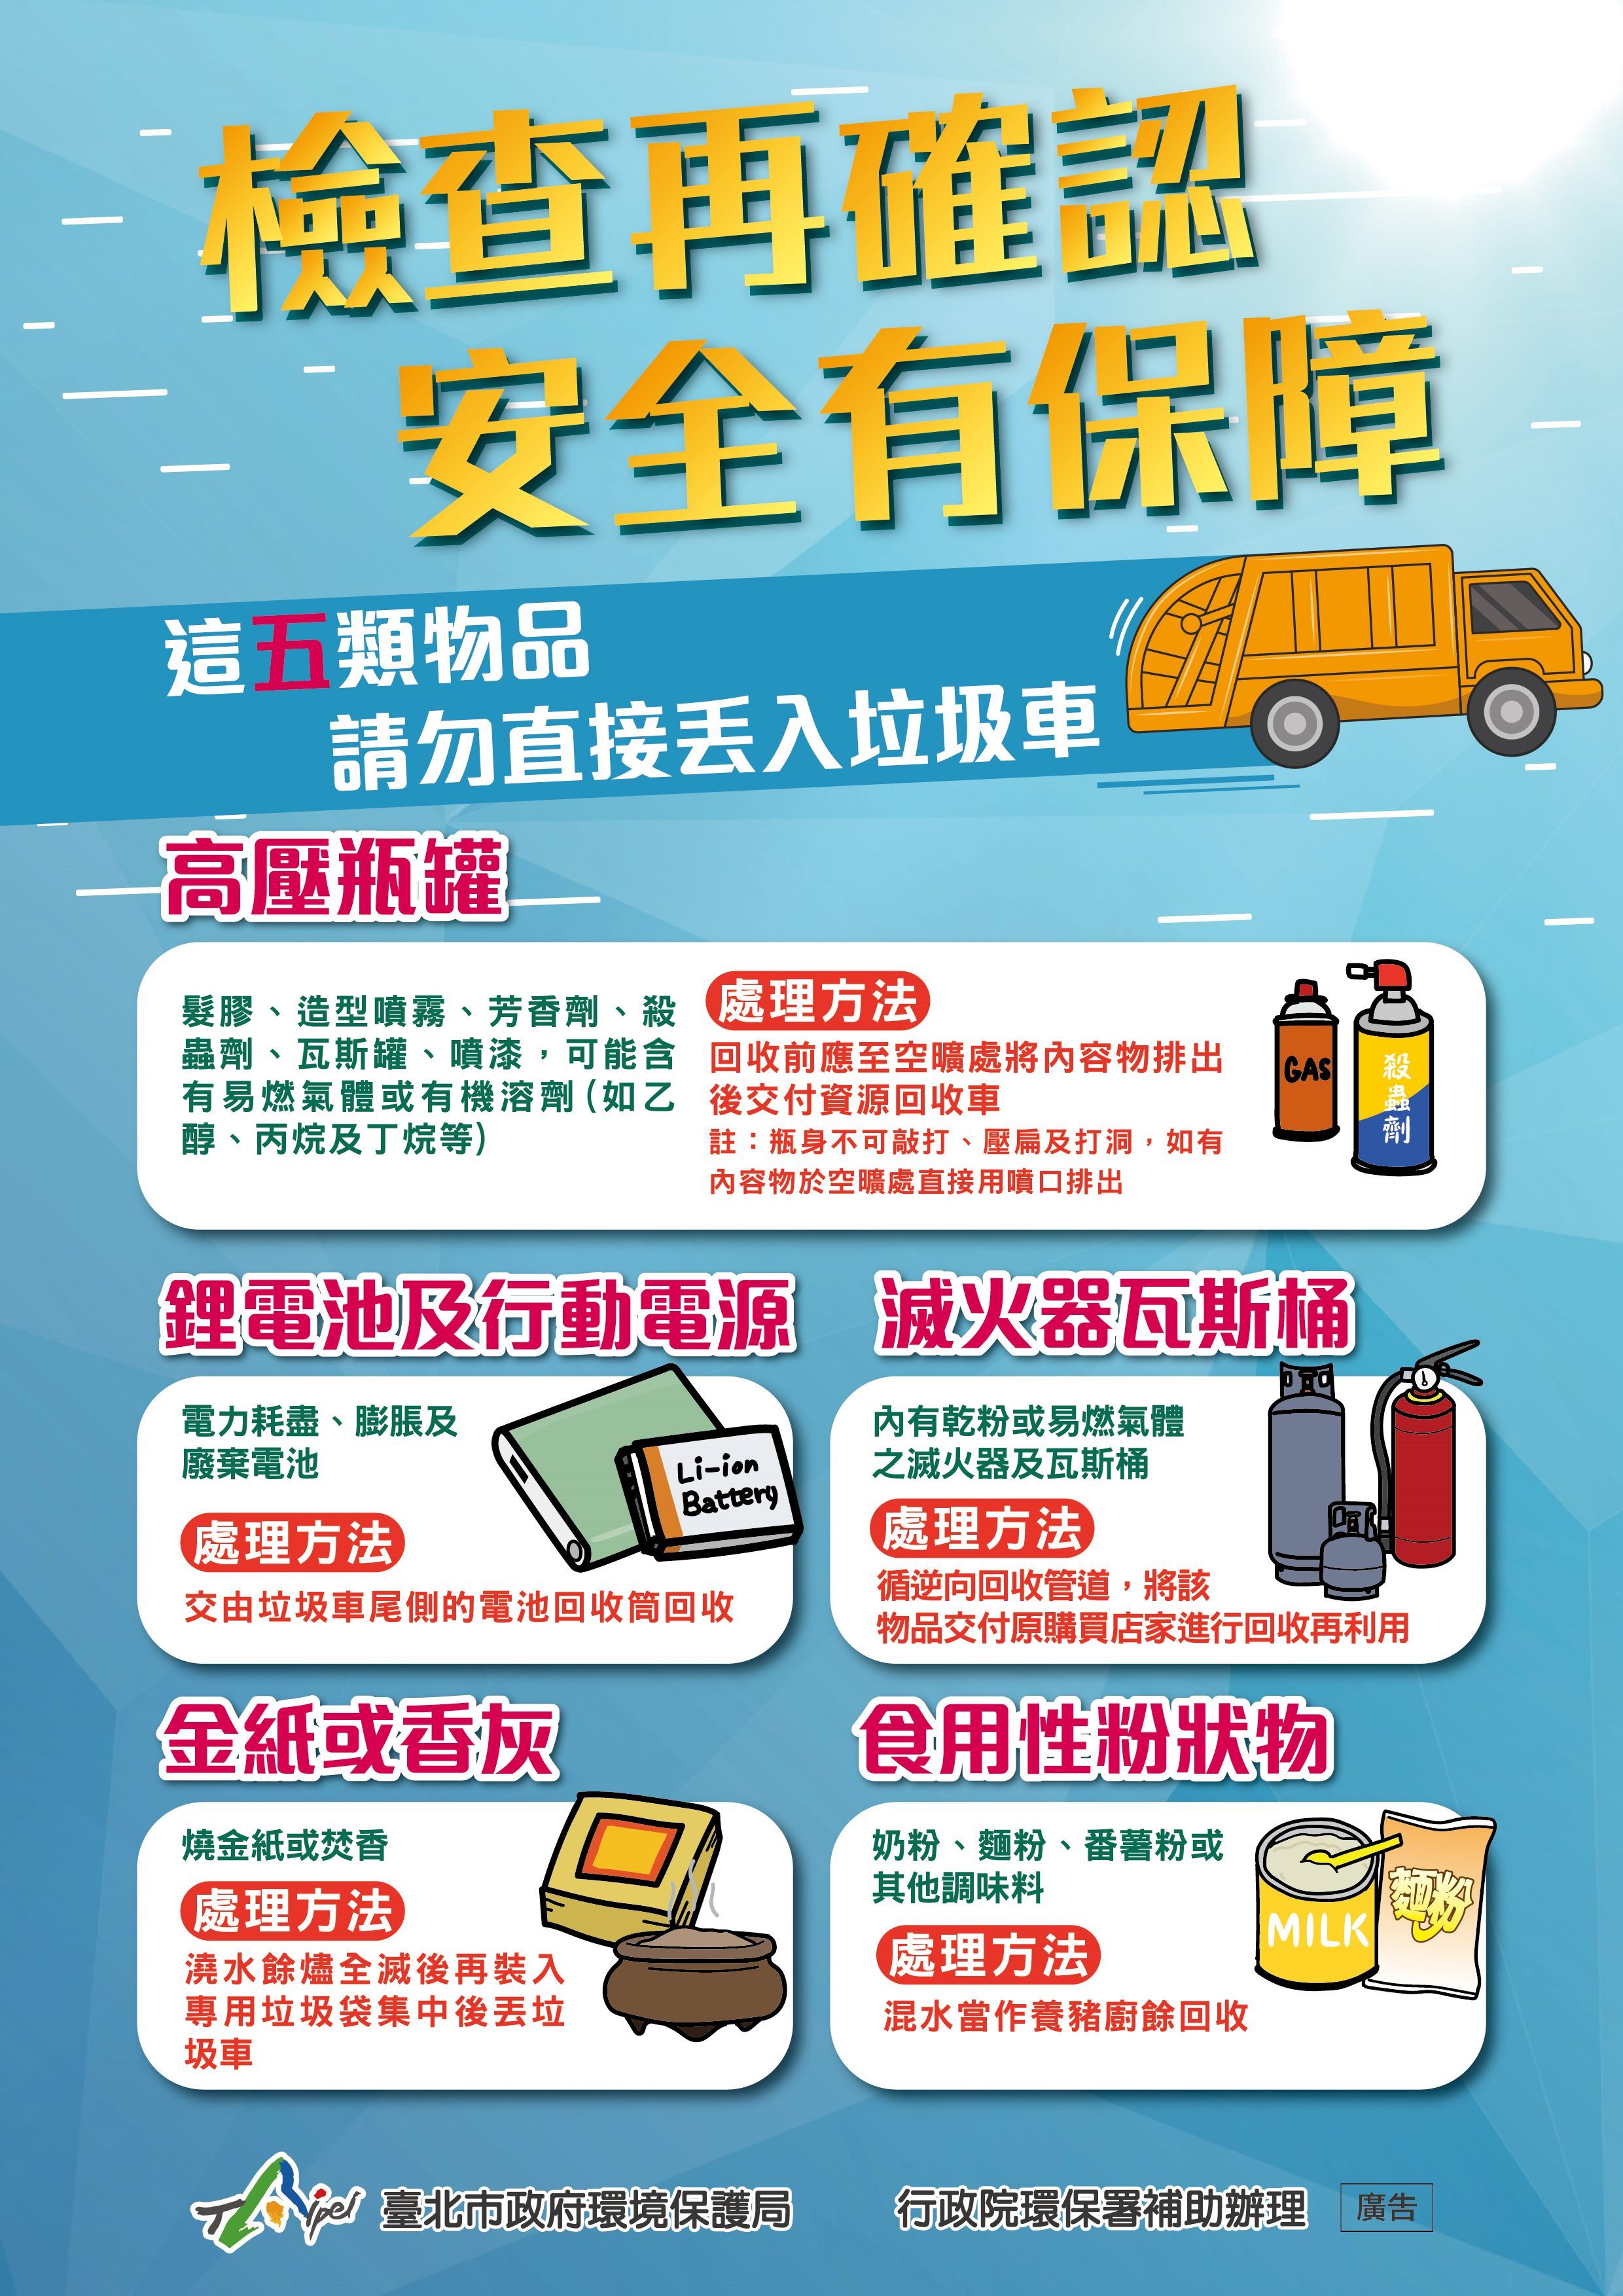 Masyarakat diingatkan untuk memilah sampah dengan tepat dan benar. Sumber: Biro Perlindungan Lingkungan Kota Taipei